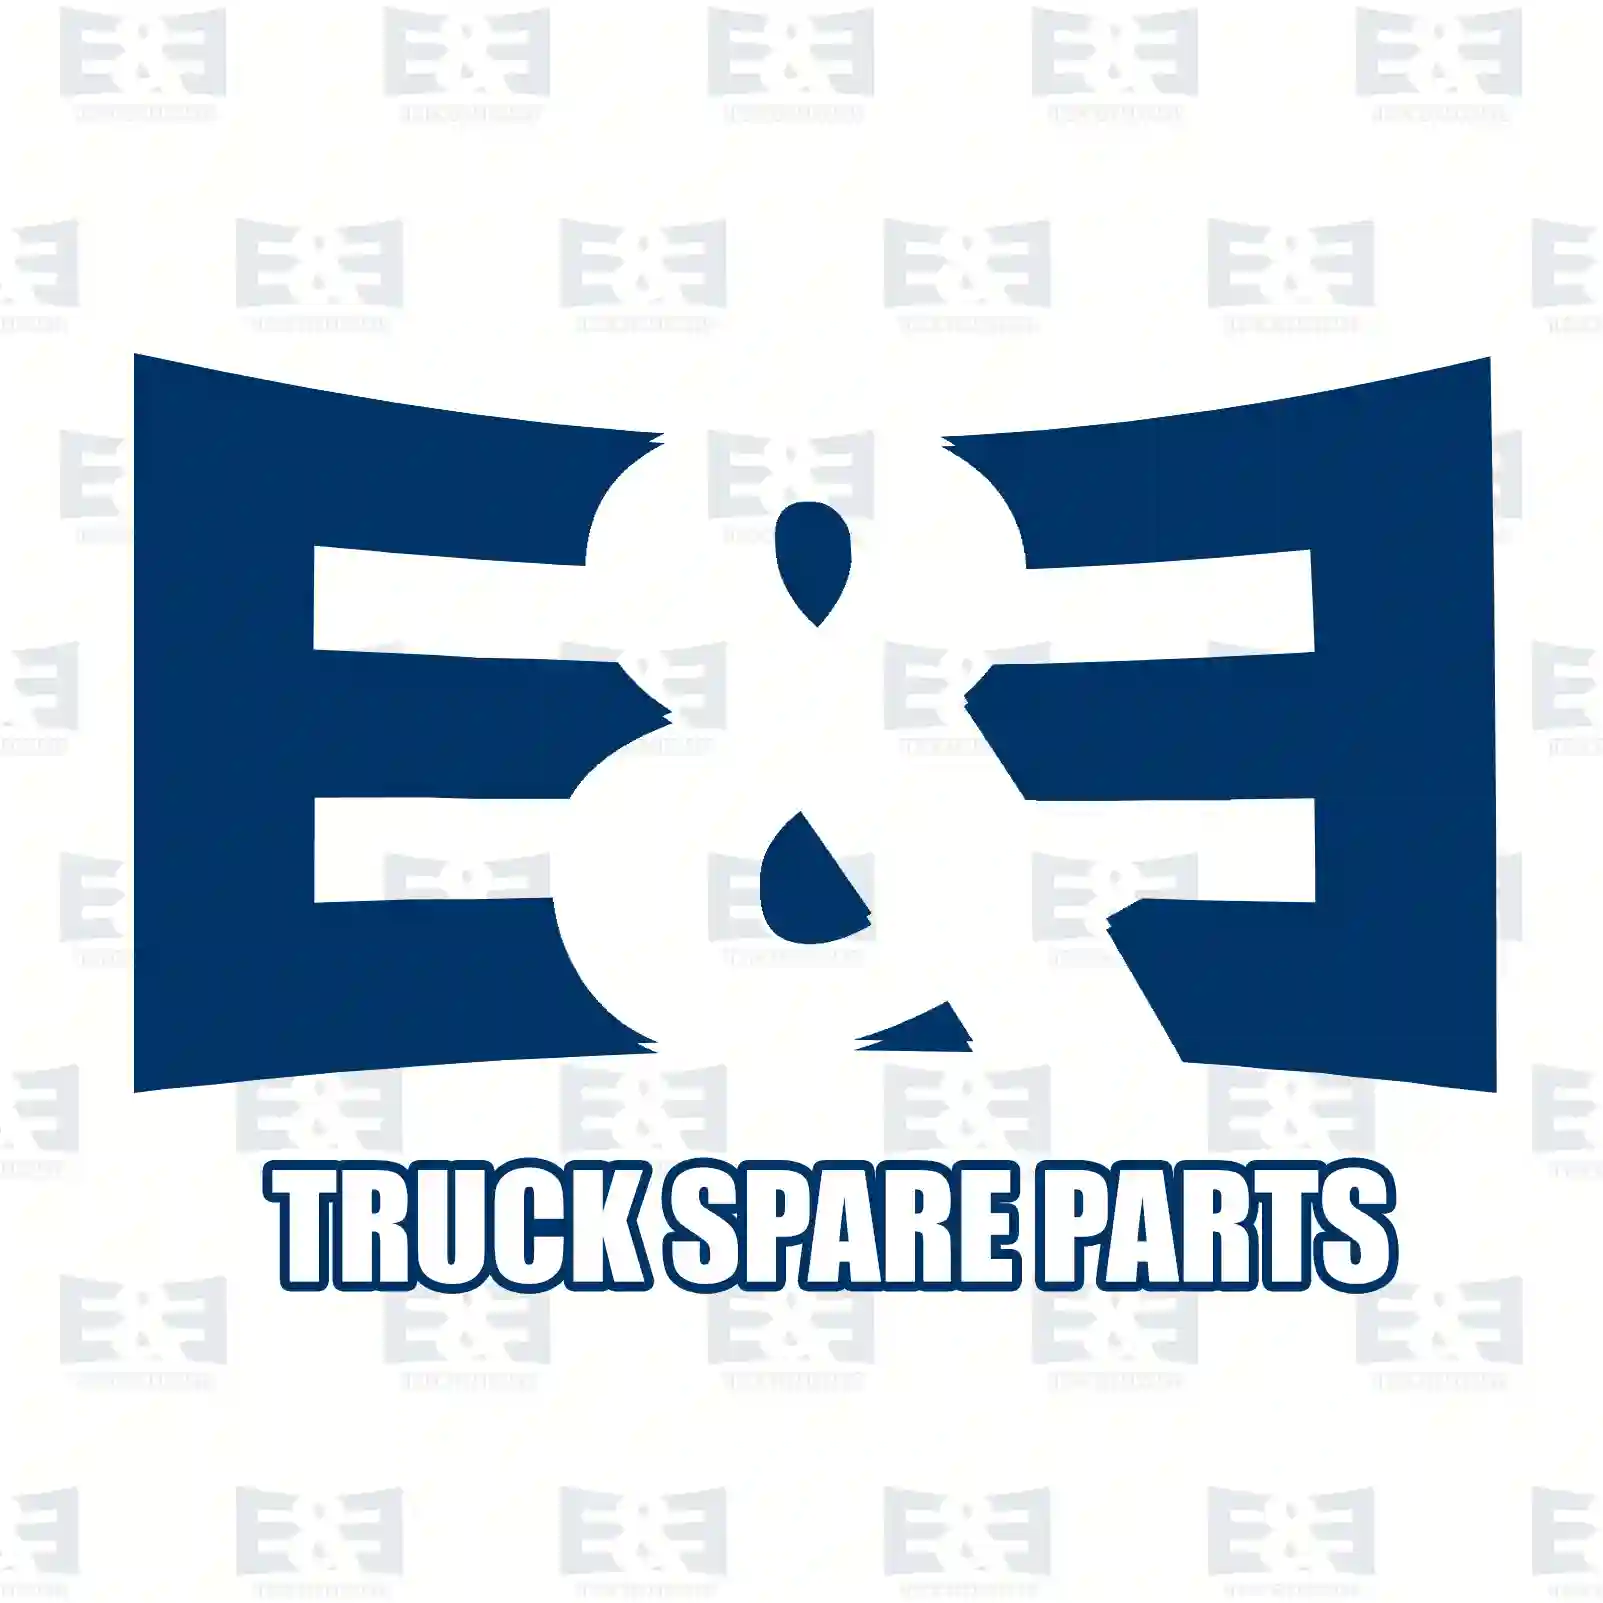 Step well case, left, 2E2292874, 81615100827, 2V5854749 ||  2E2292874 E&E Truck Spare Parts | Truck Spare Parts, Auotomotive Spare Parts Step well case, left, 2E2292874, 81615100827, 2V5854749 ||  2E2292874 E&E Truck Spare Parts | Truck Spare Parts, Auotomotive Spare Parts